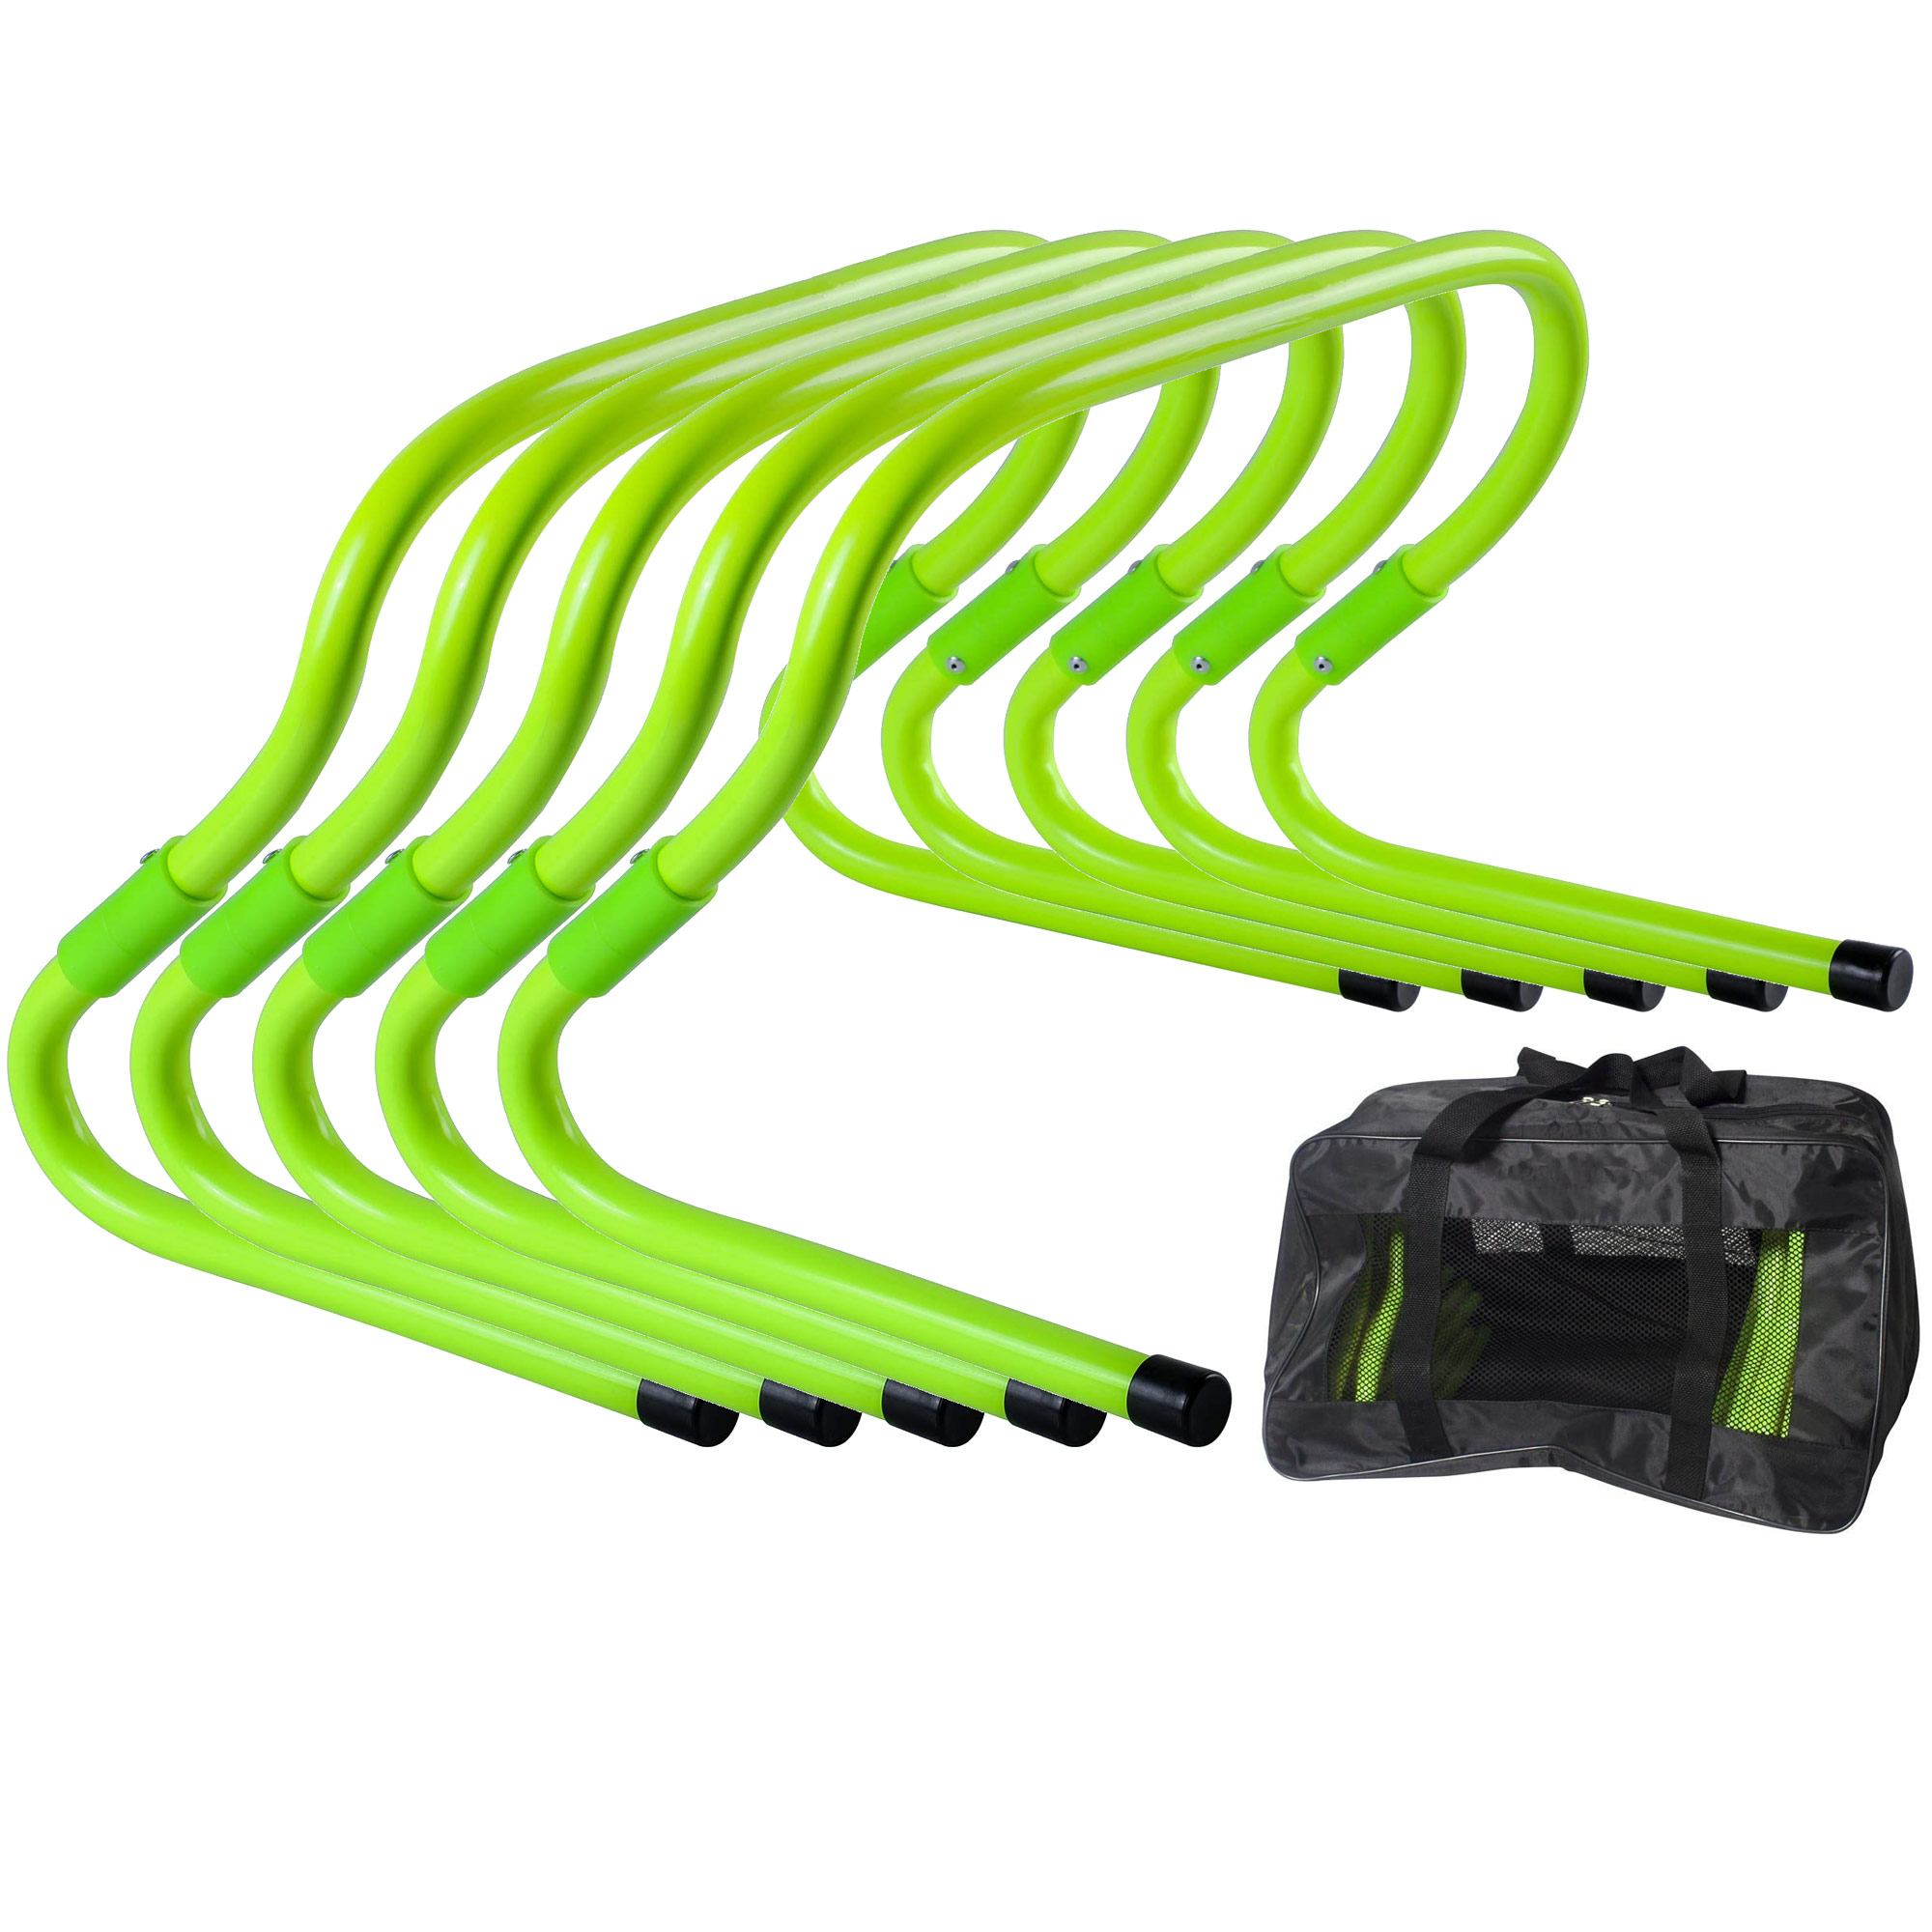 Барьеры тренировочные Sportex набор из 5 штук в сумке, 15-30см E33553-ST зеленый Neon - фото 1